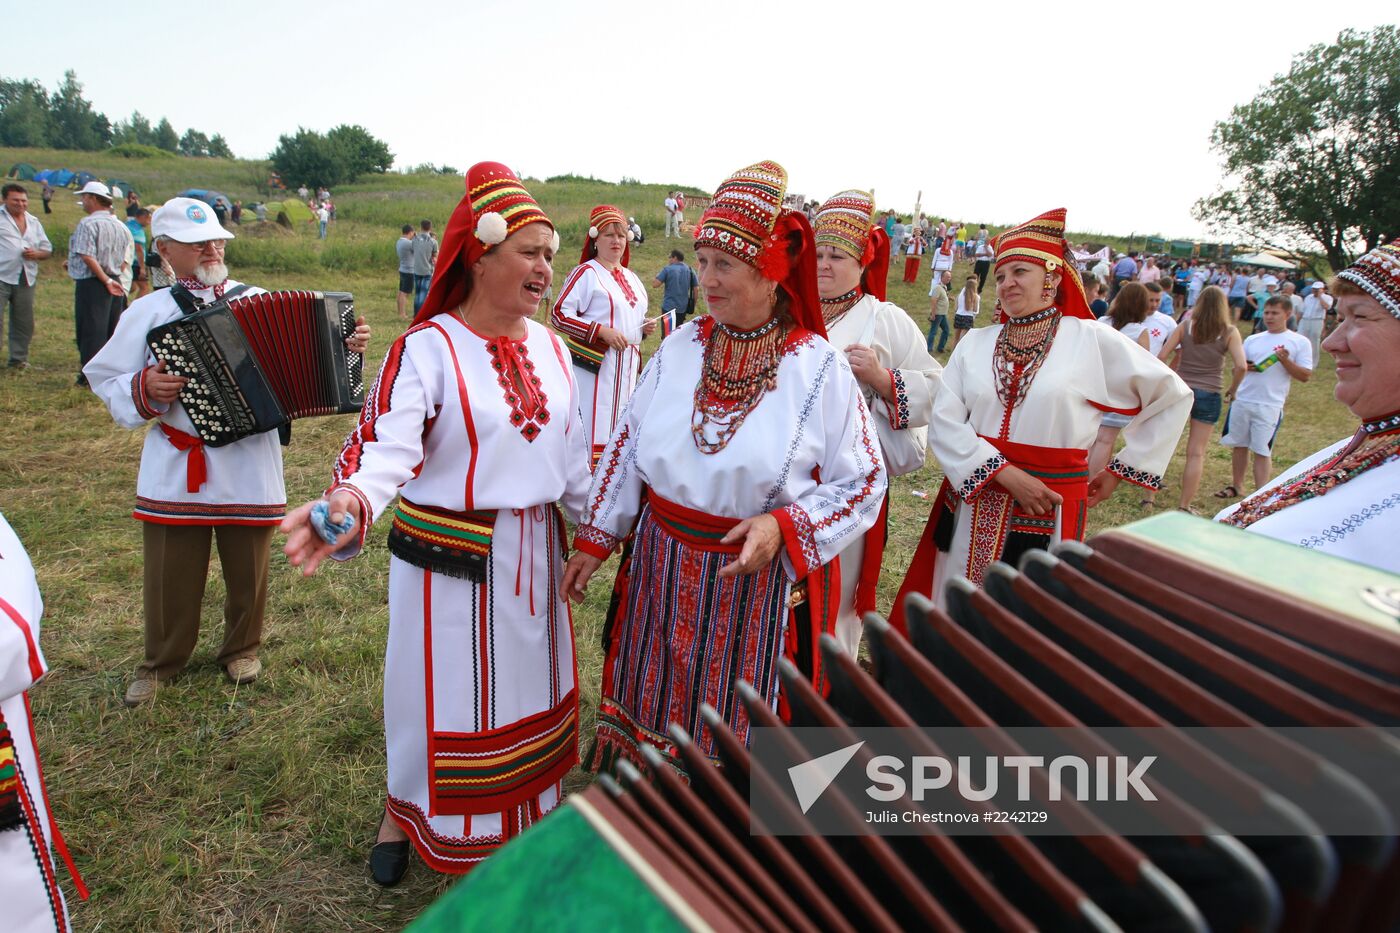 Rasken Ozks festival in Mordovia